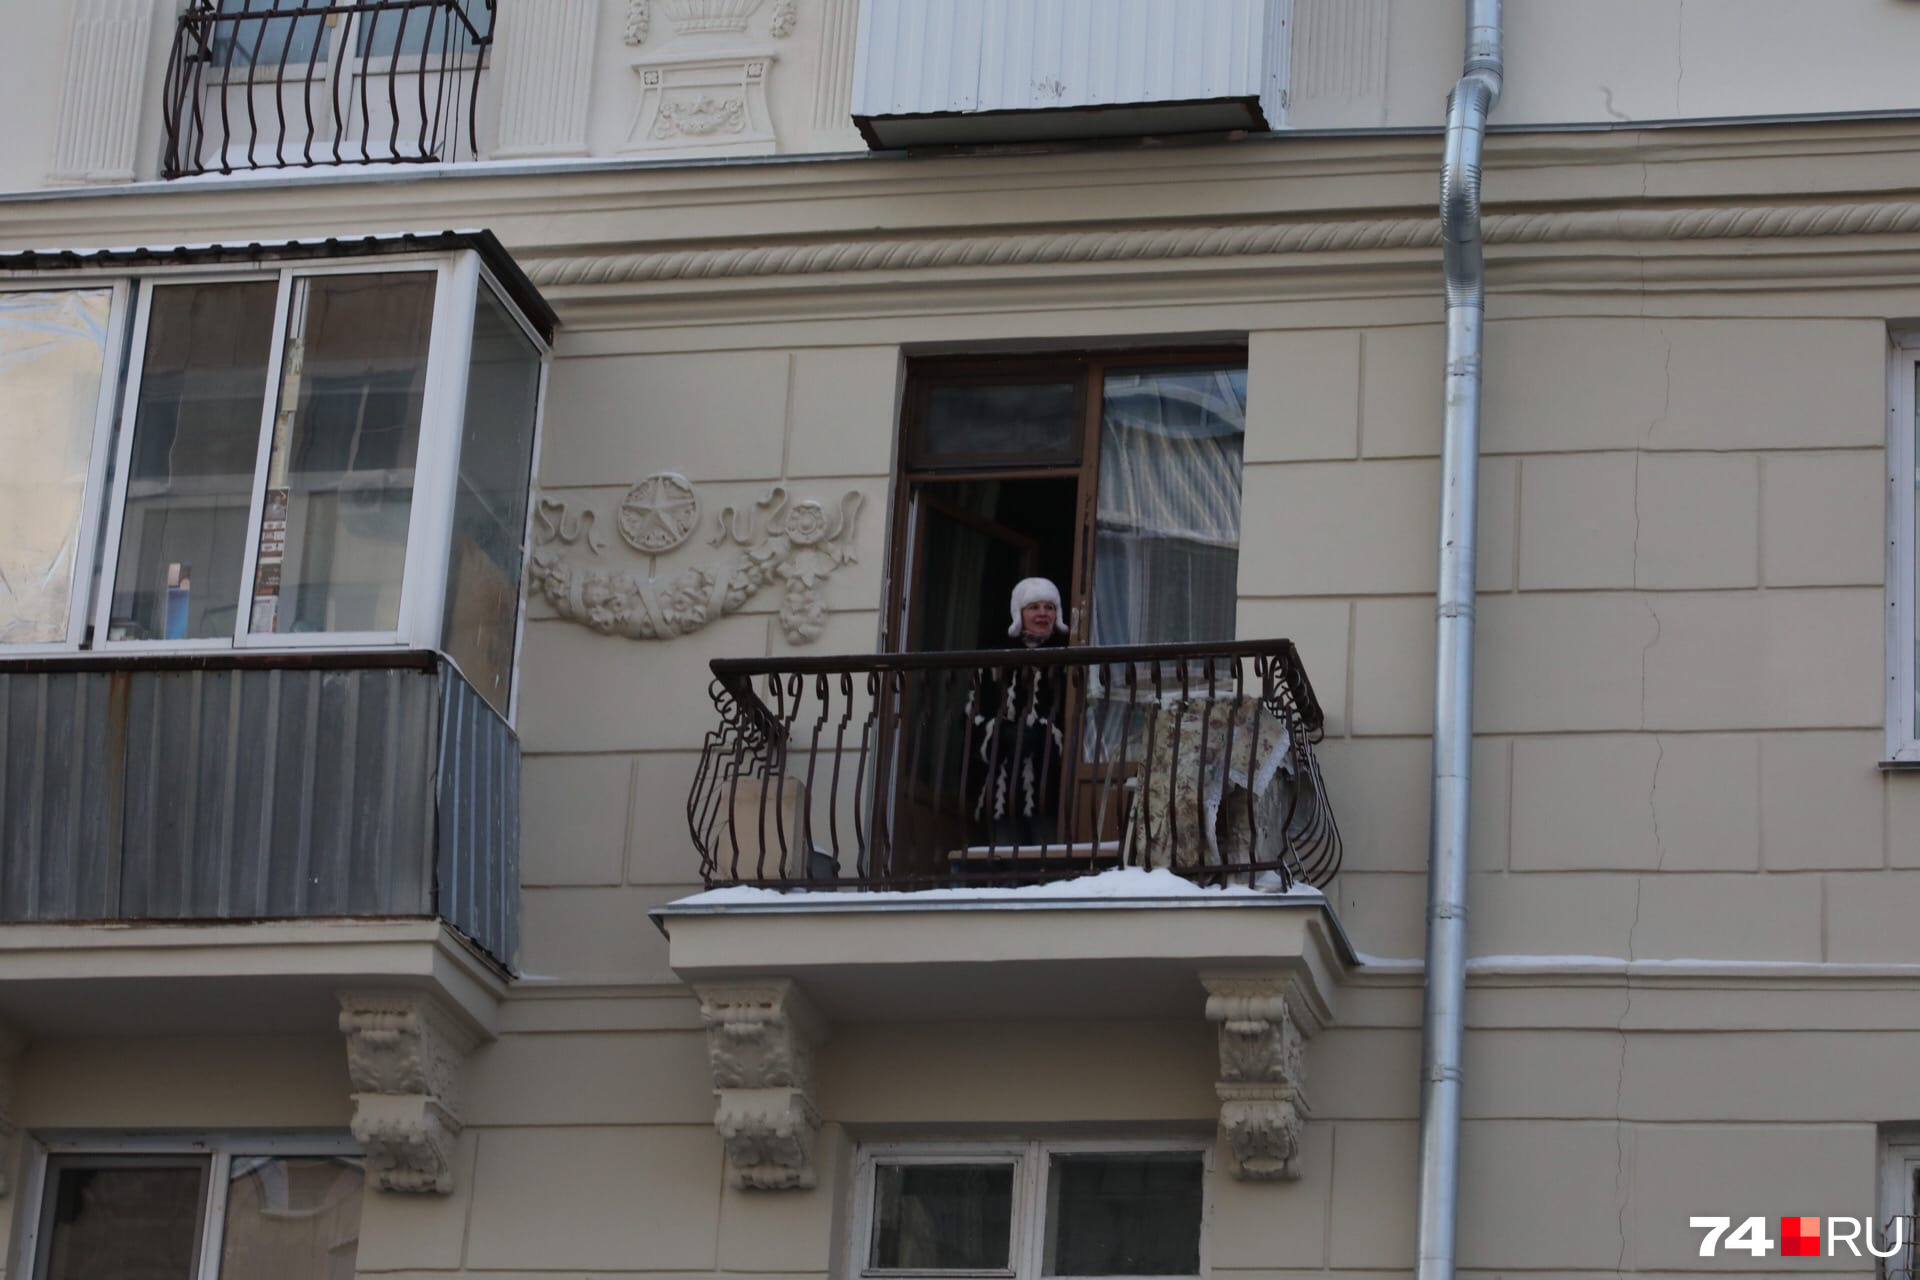 Жители улицы Советской смотрели сверху на участников несогласованной акции